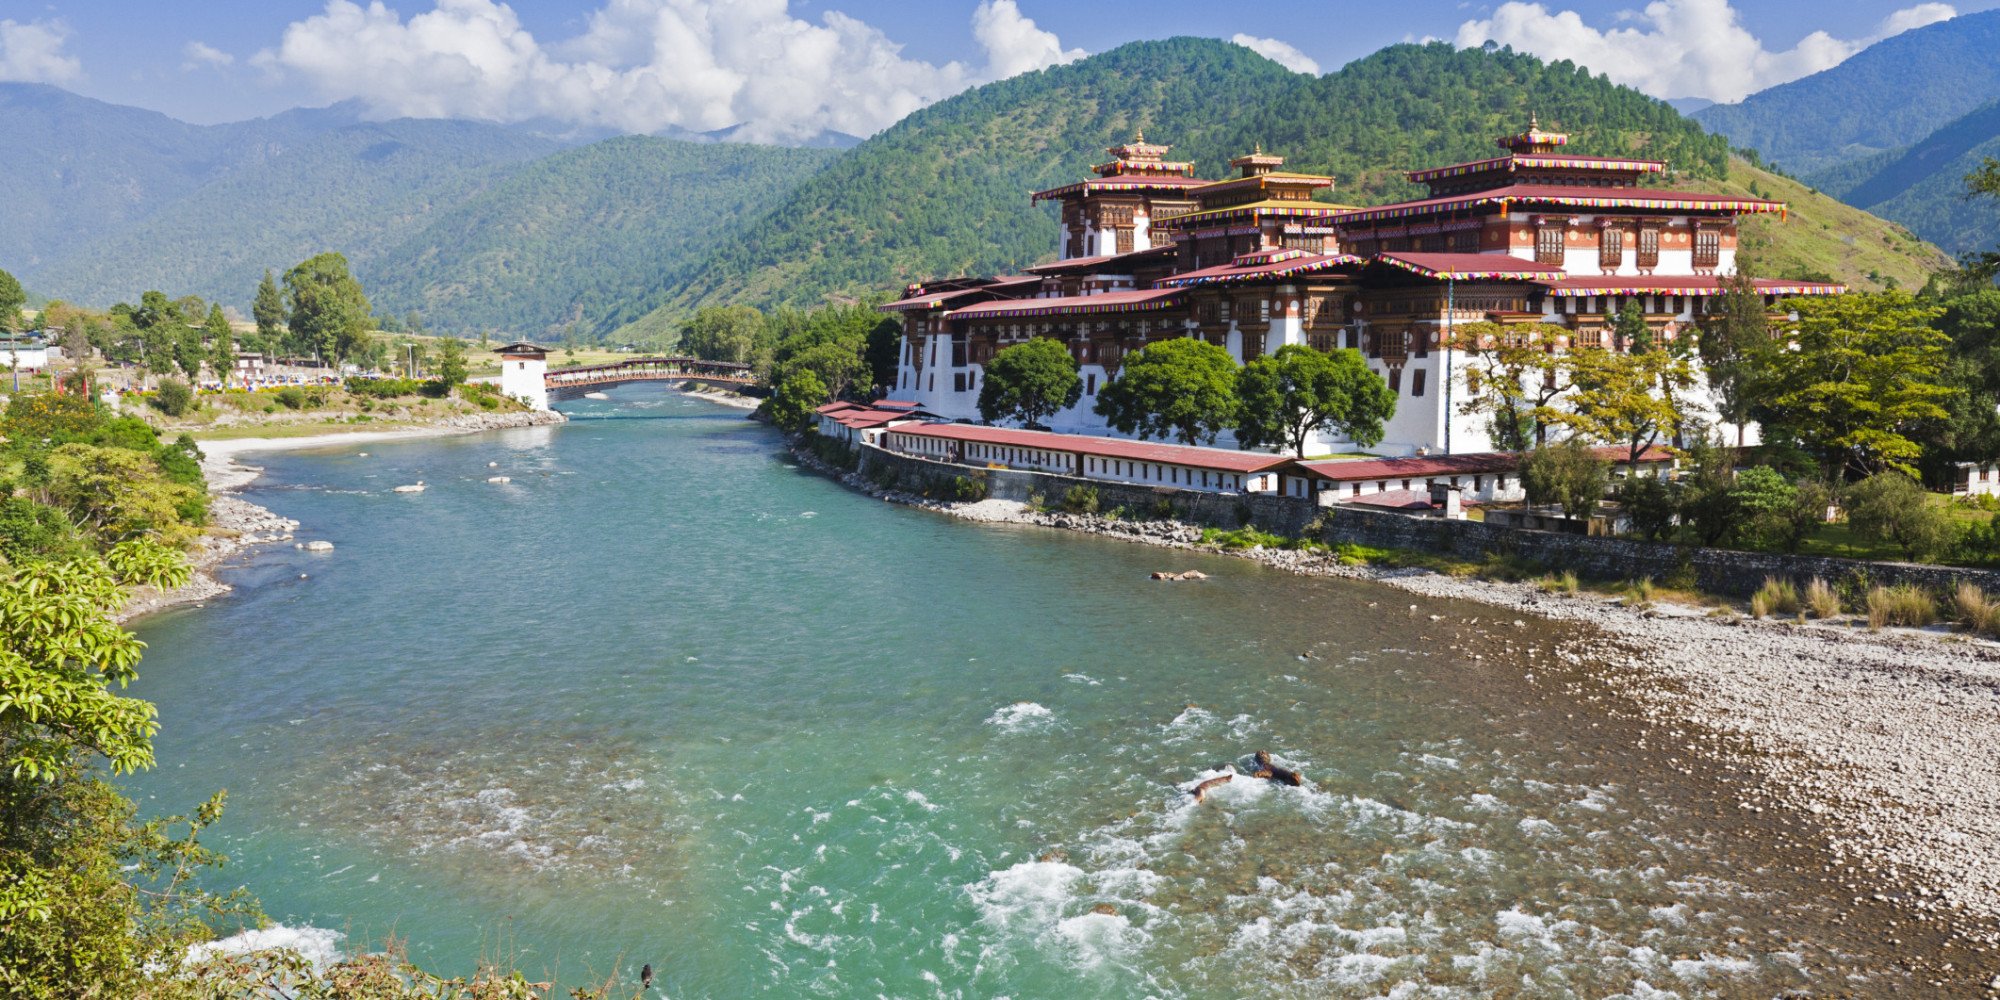 Chuyển phát nhanh Singpost Logistics đi Bhutan giá rẻ chất lượng